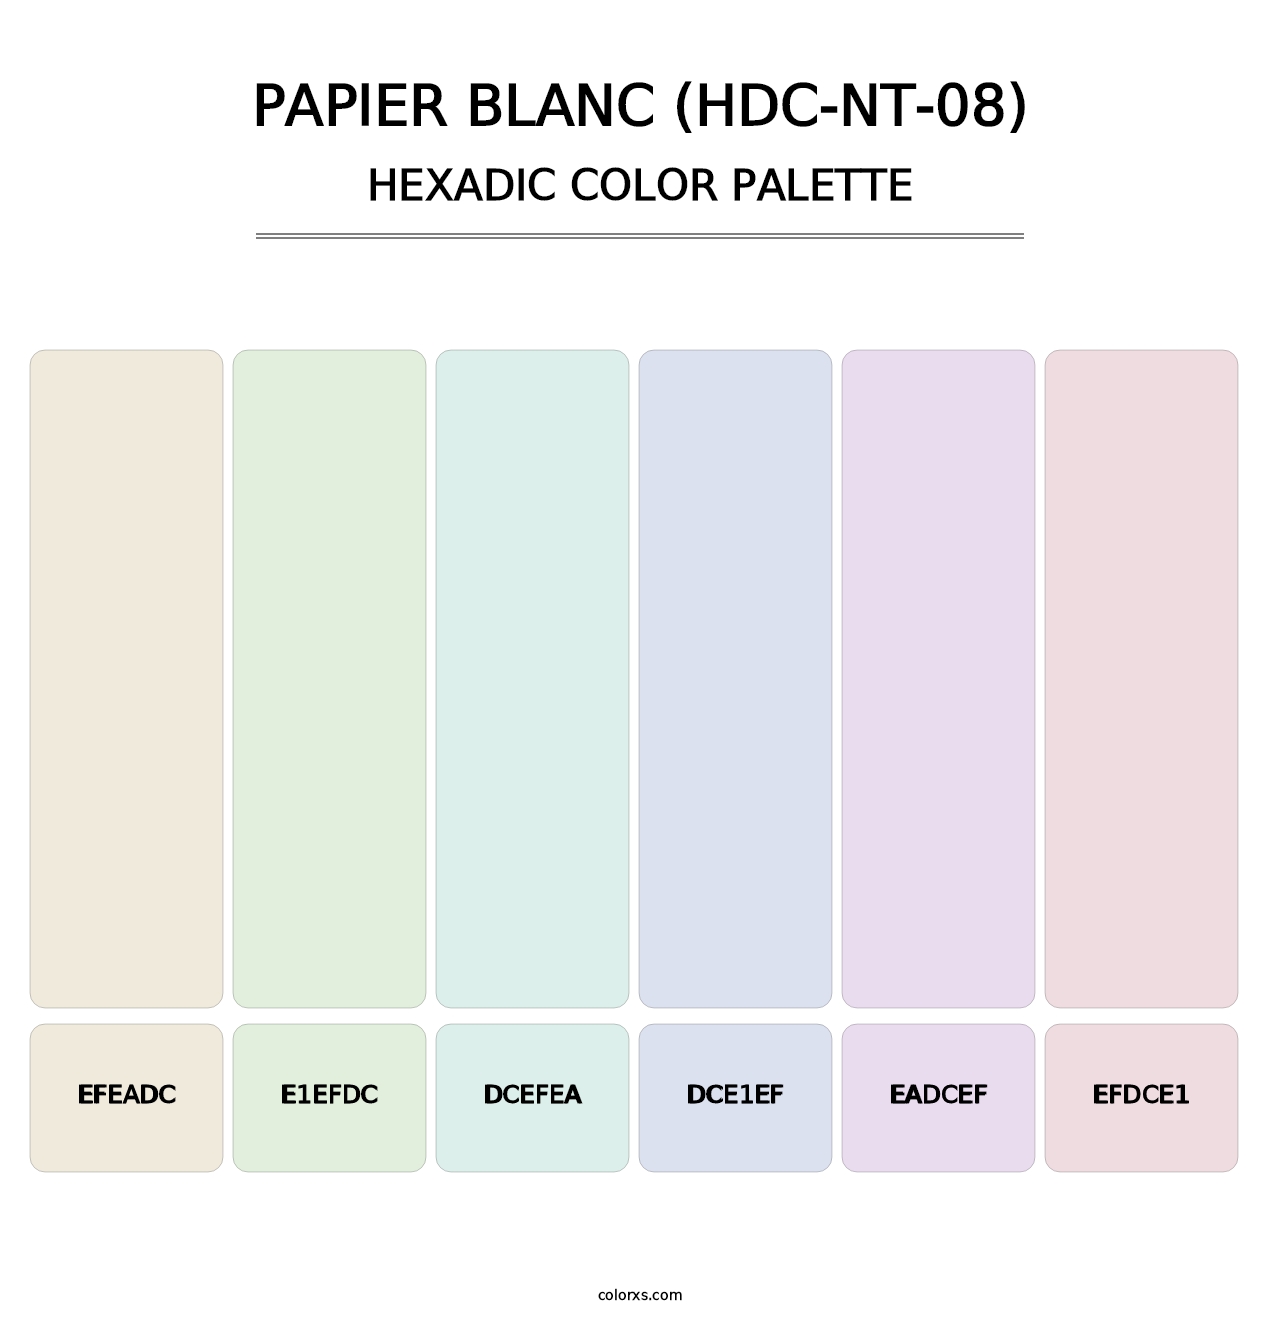 Papier Blanc (HDC-NT-08) - Hexadic Color Palette